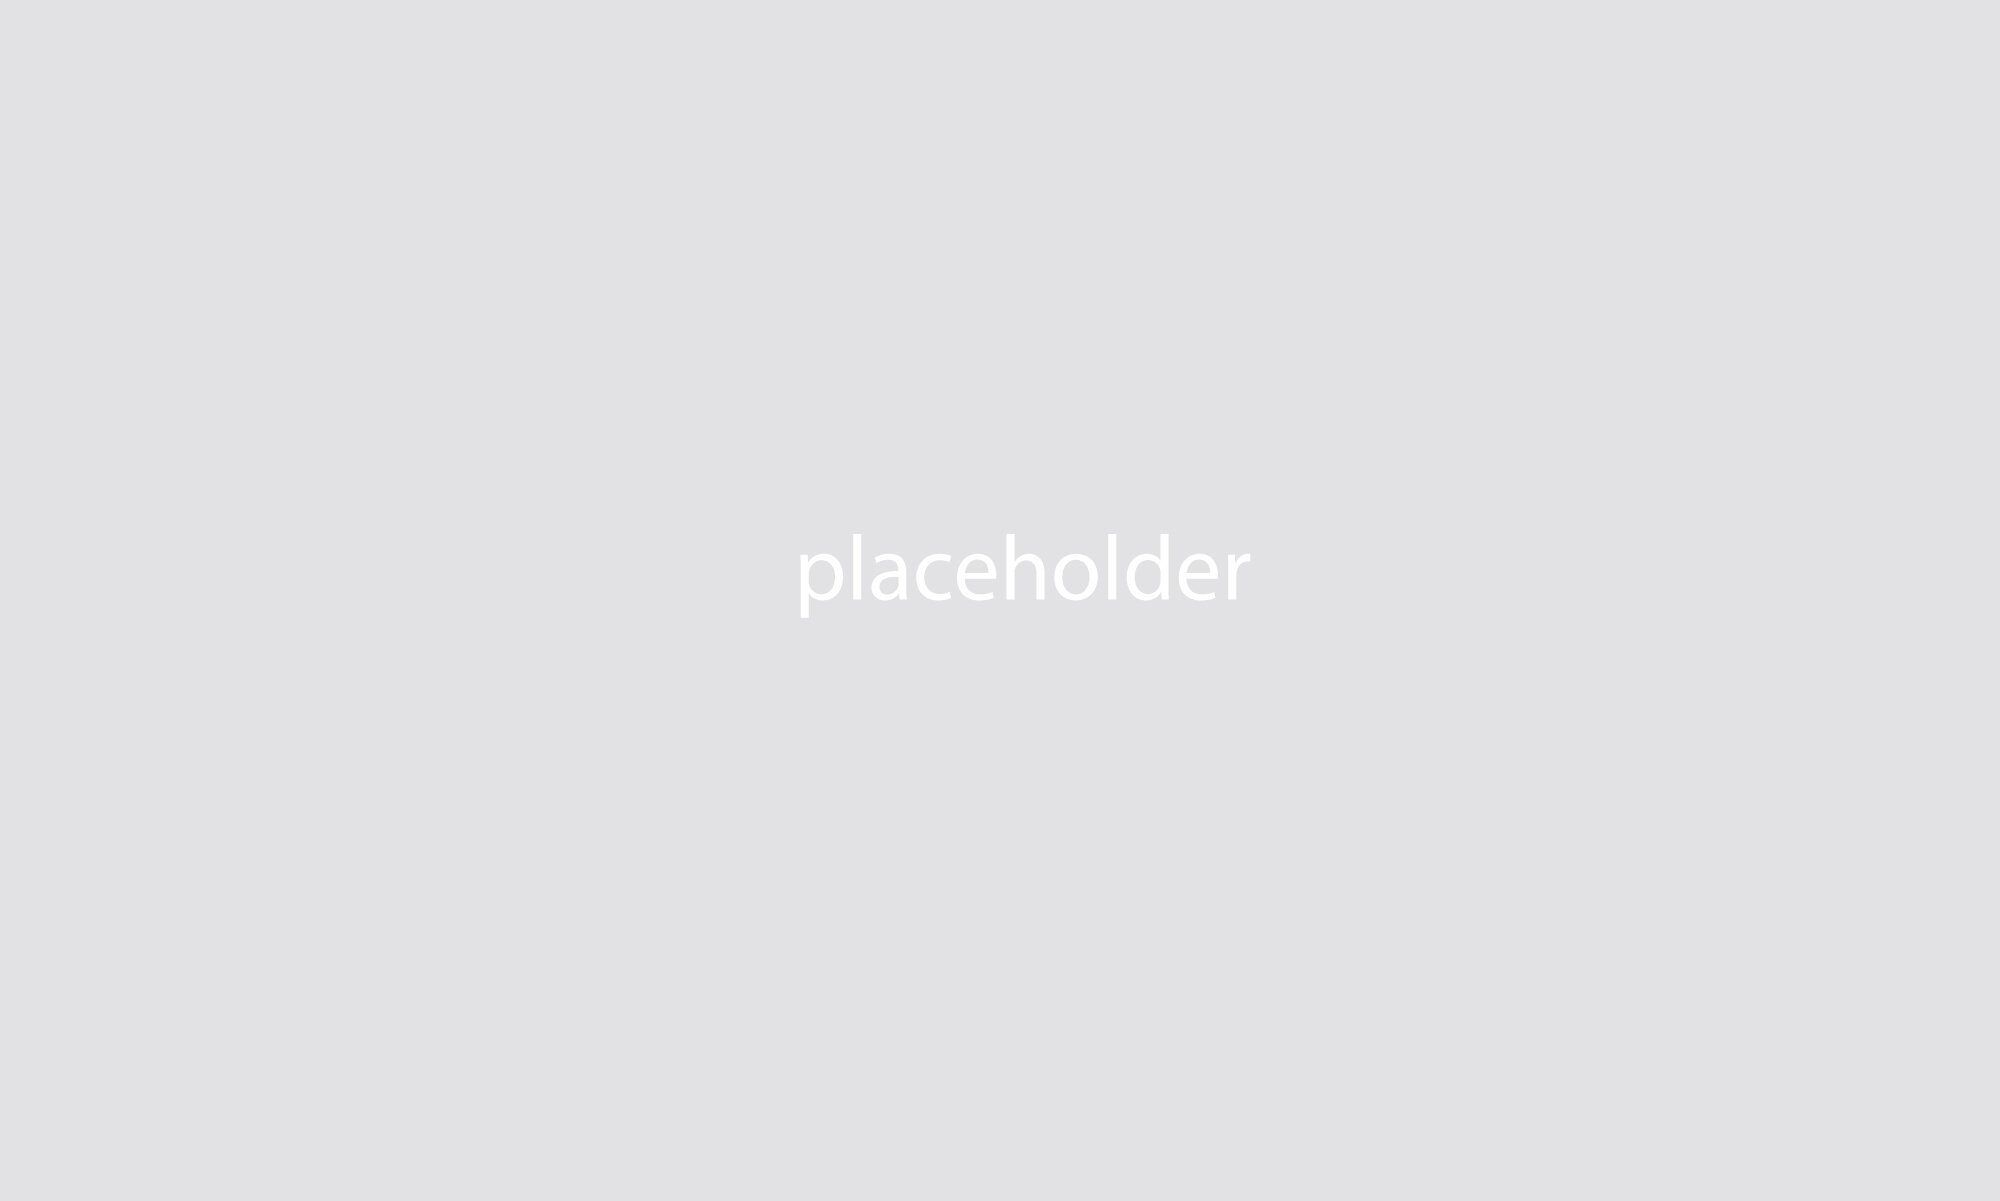 Placeholder.jpg